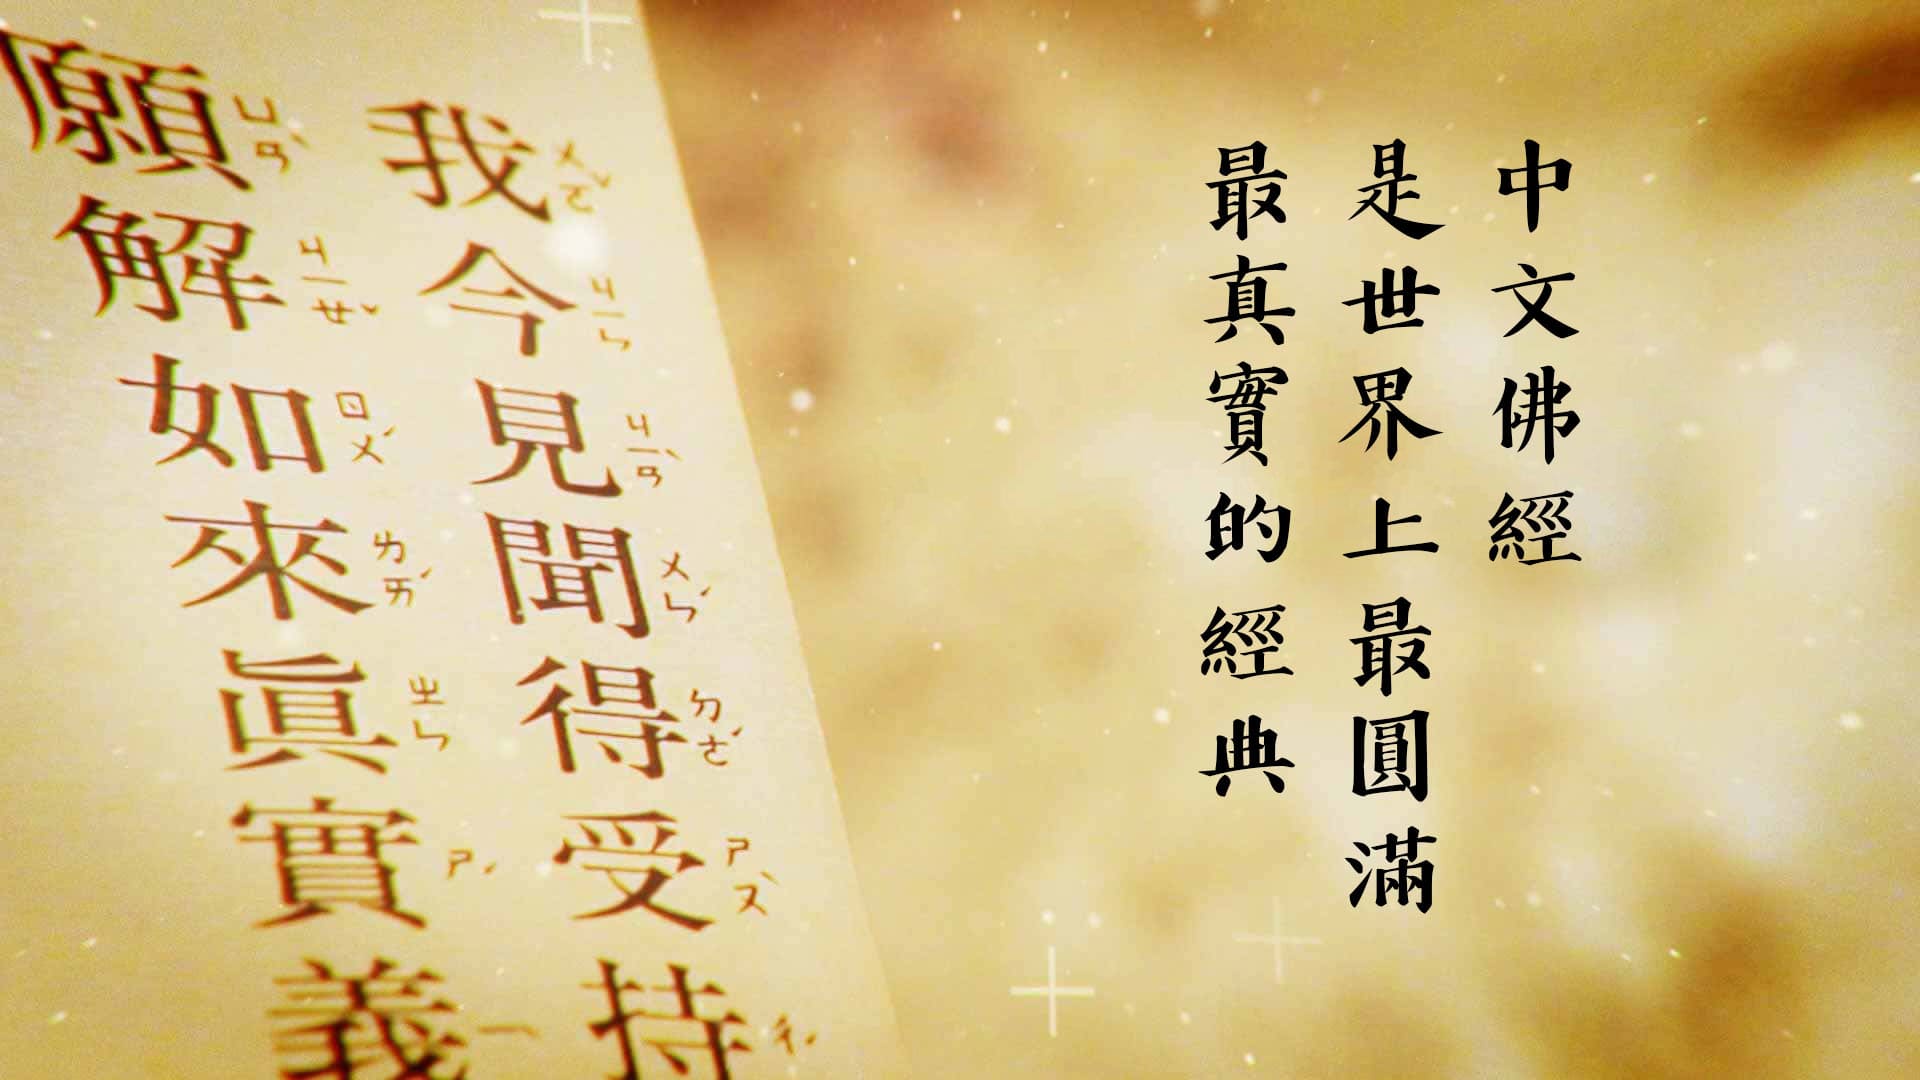 中文佛經是世界上最圓滿最真實的經典